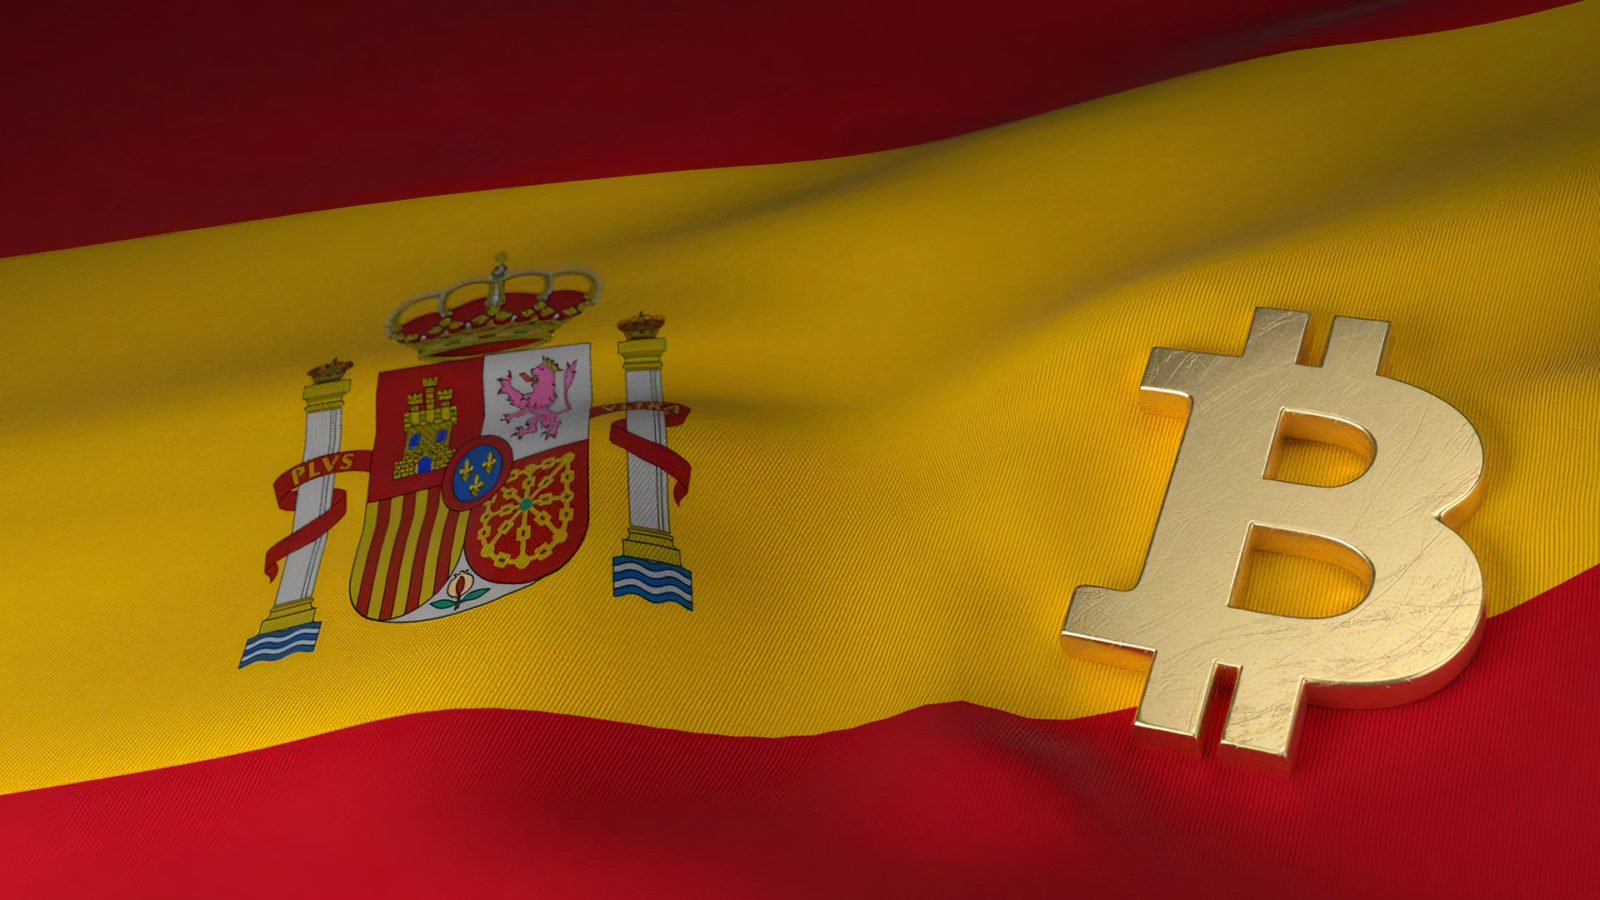 إسبانيا تسرع مسارها نحو  MiCA لوائح العملة المشفرة ستبدأ في عام 2025